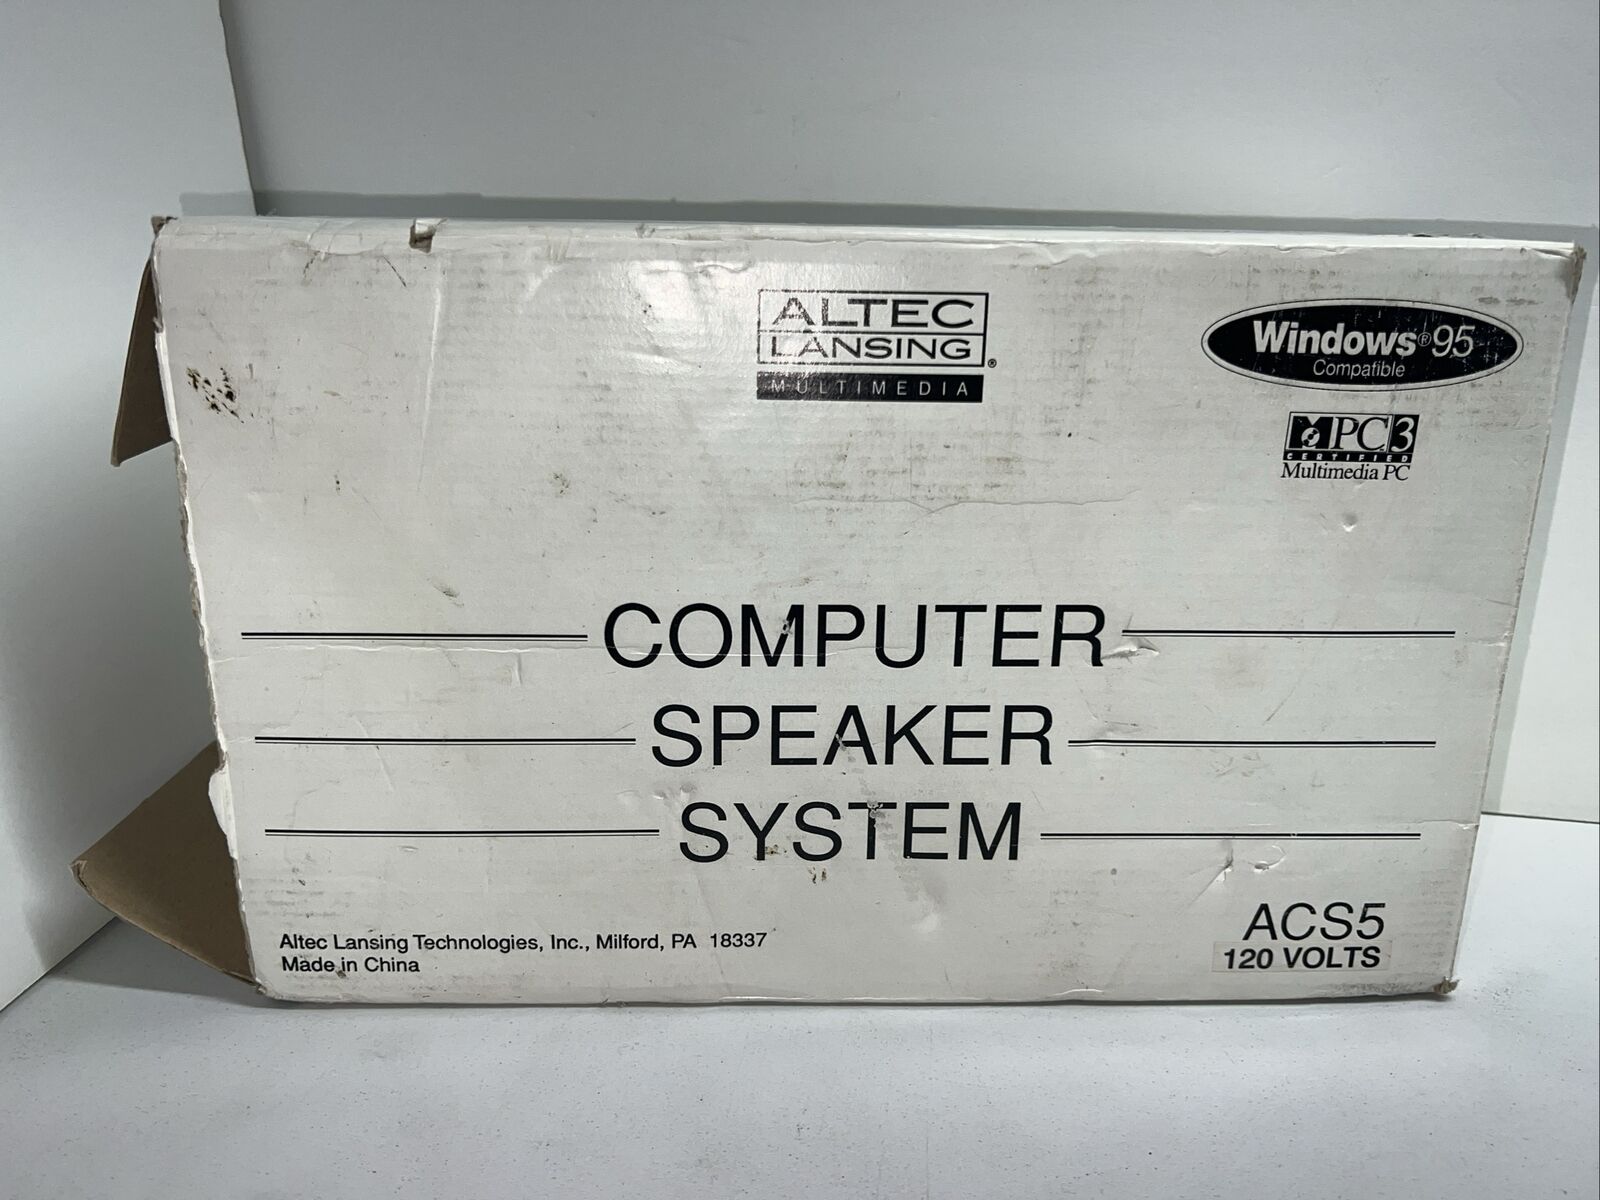 Altec Lansing Computer Speaker System ACS5 PC Multimedia Speakers Vtg Opened Box